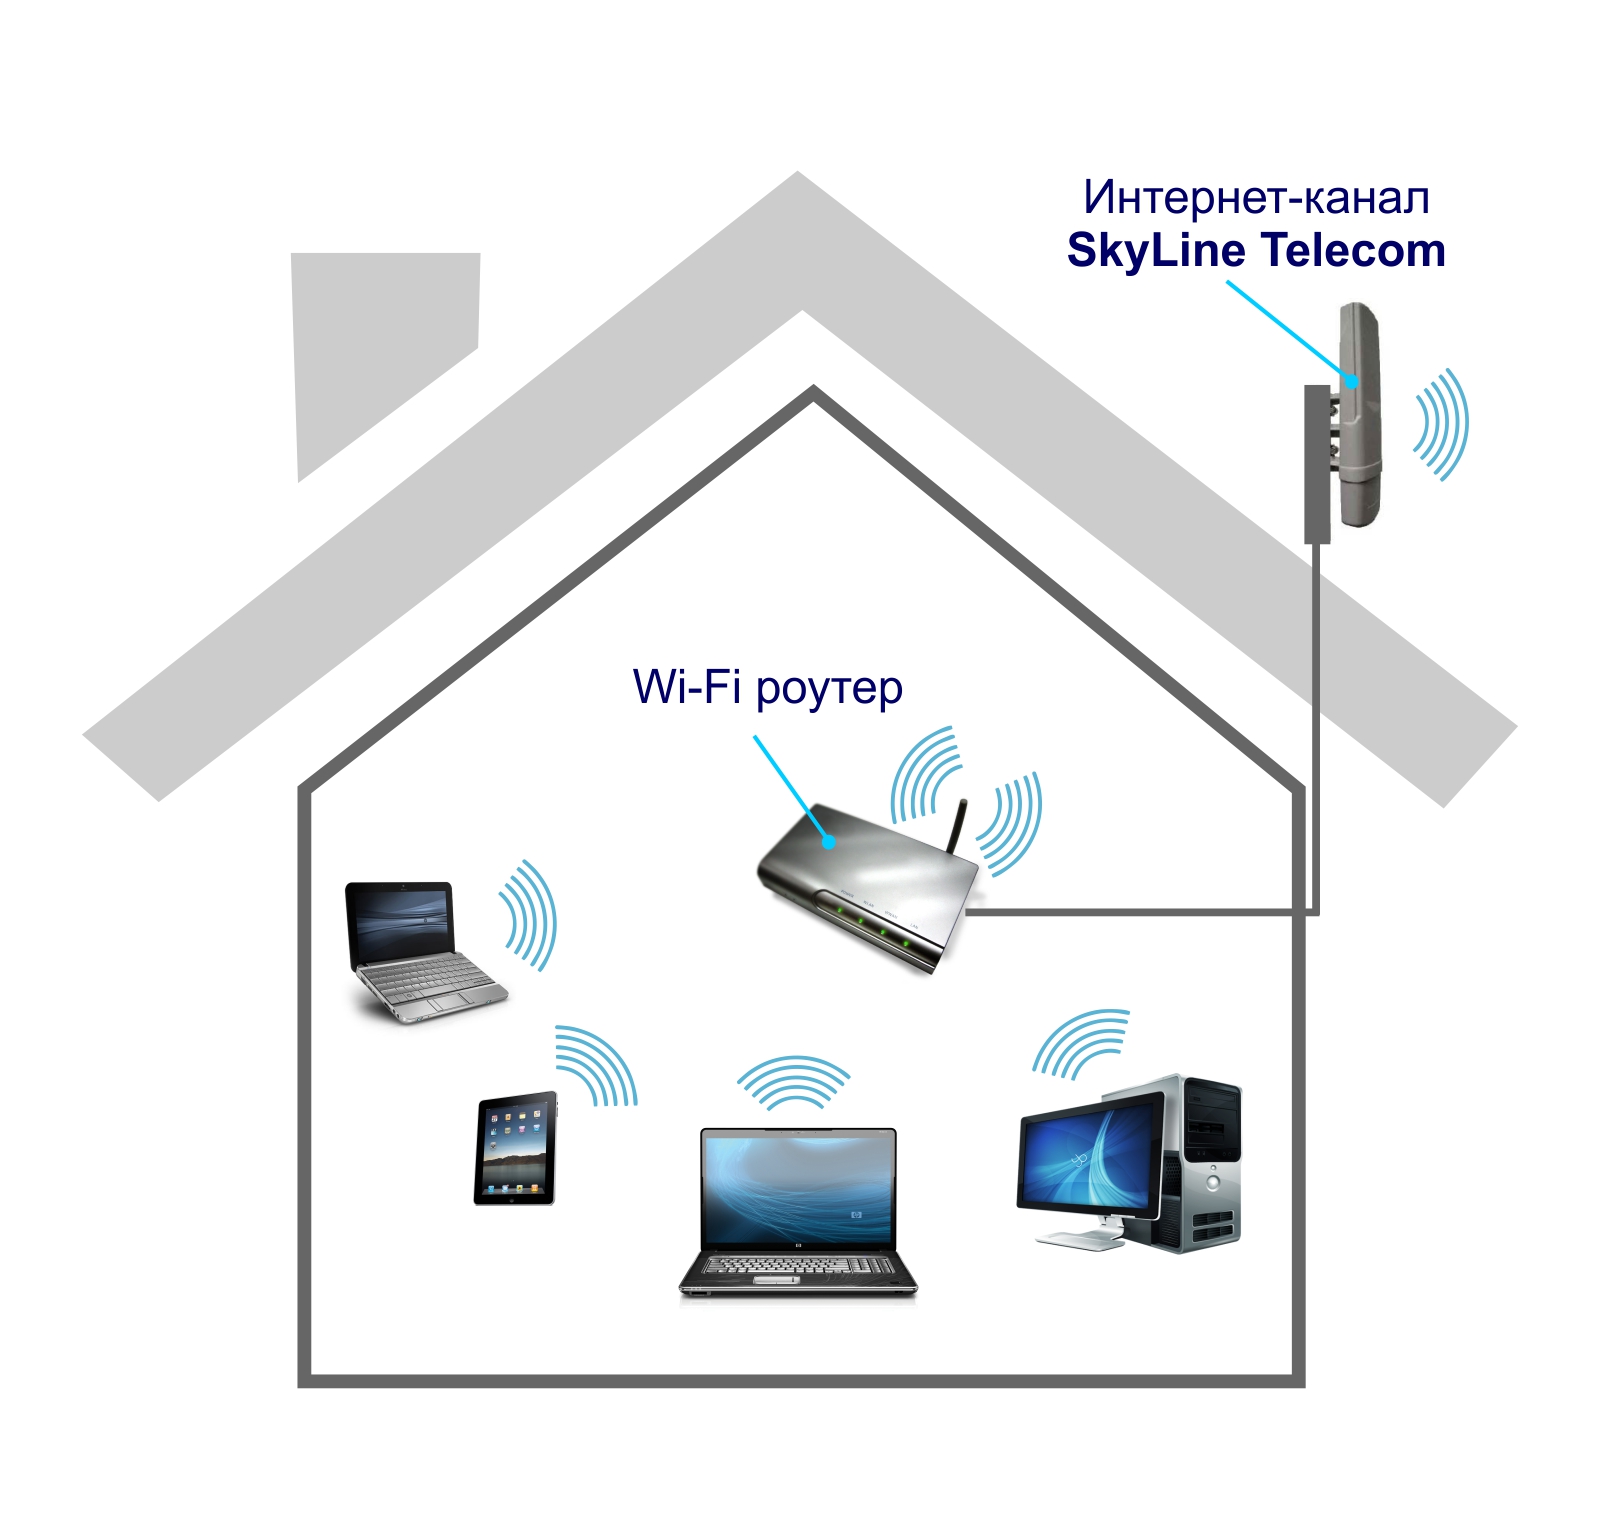 Новым клиентам одновременно с Интернет подключают и услугу «Домашний WiFi».